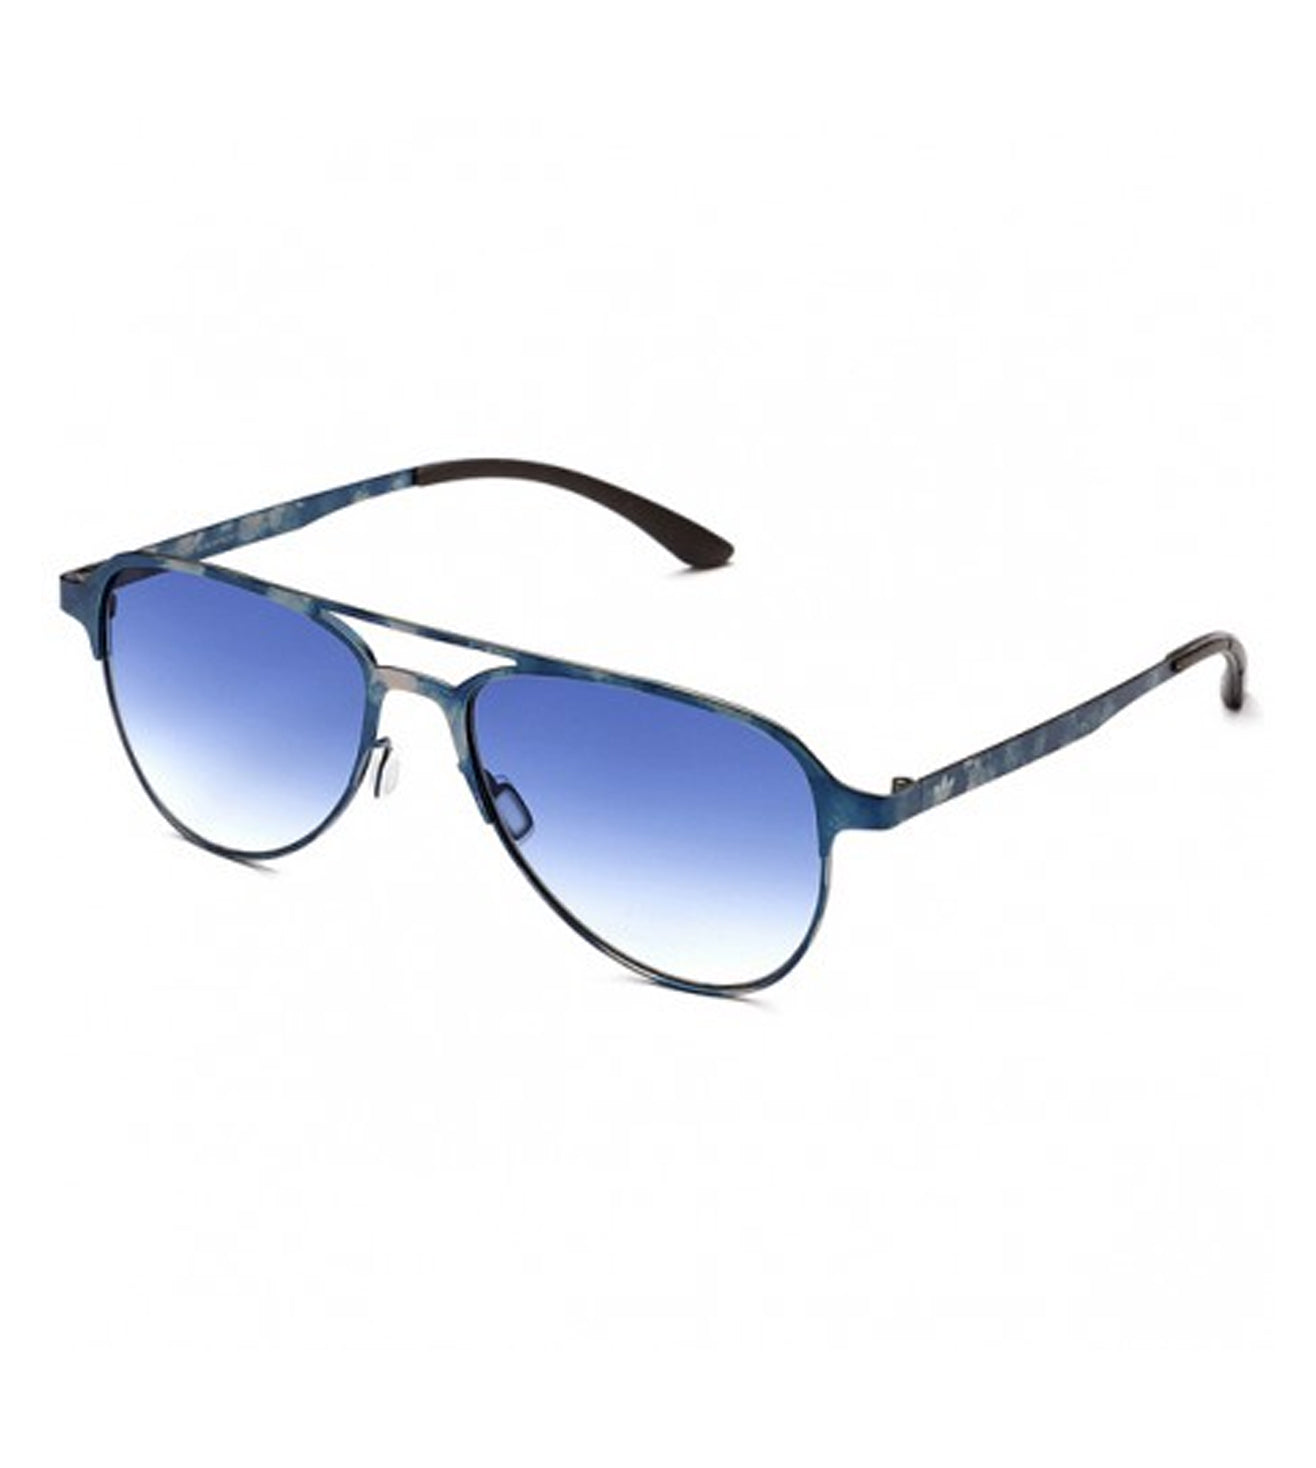 Adidas Originals Men's Blue Aviator Sunglasses